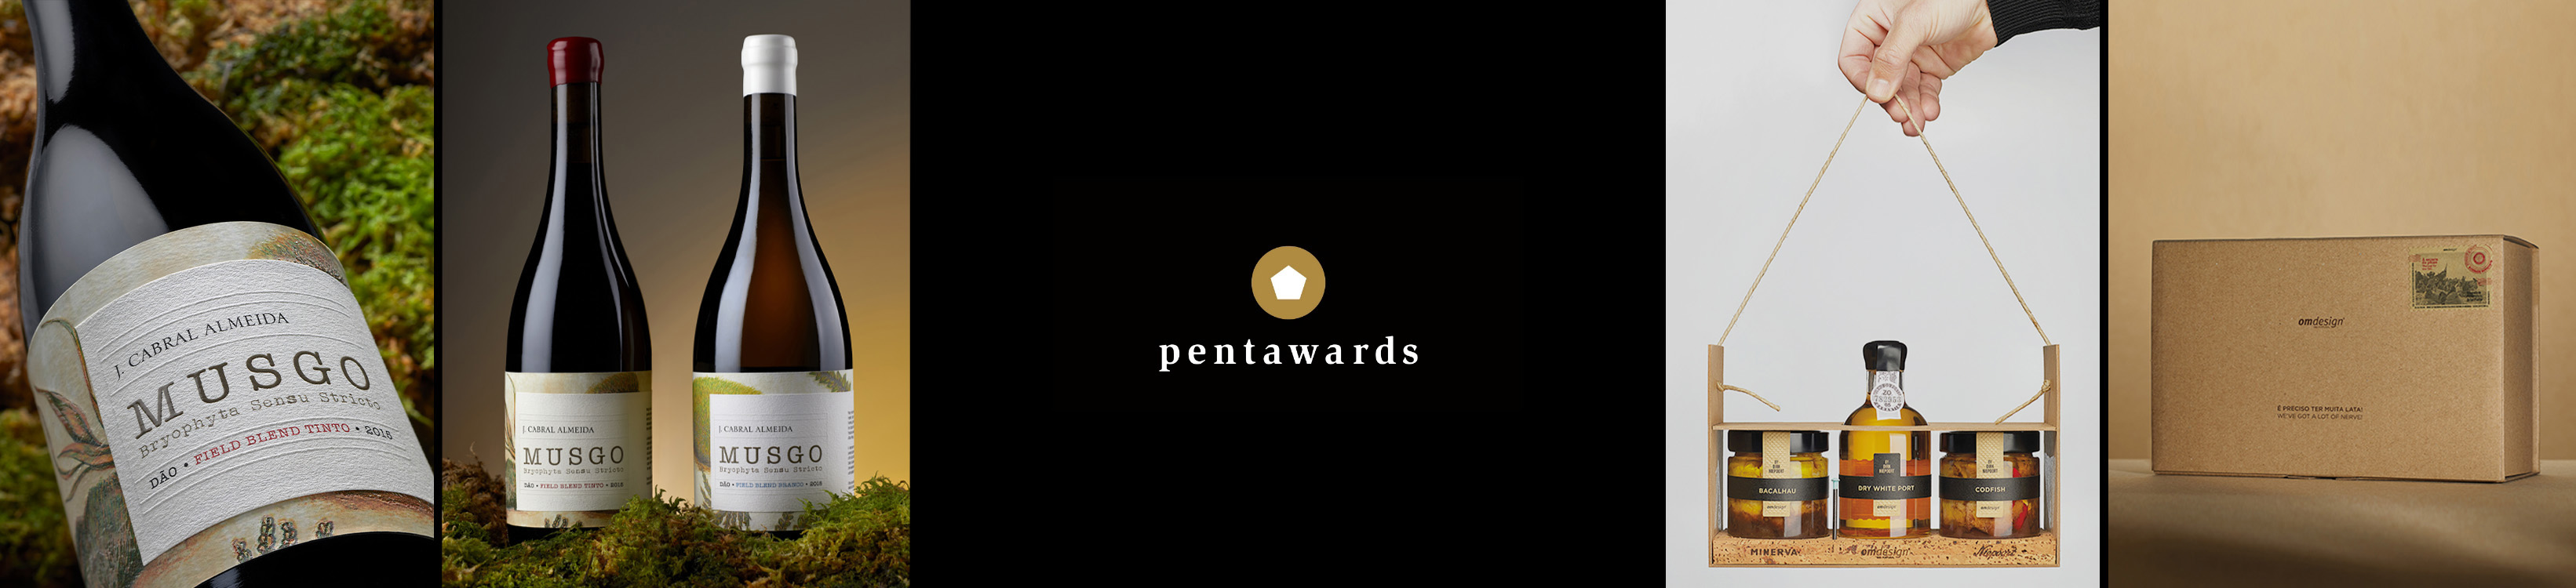 Omdesign was twice awarded at Pentawards